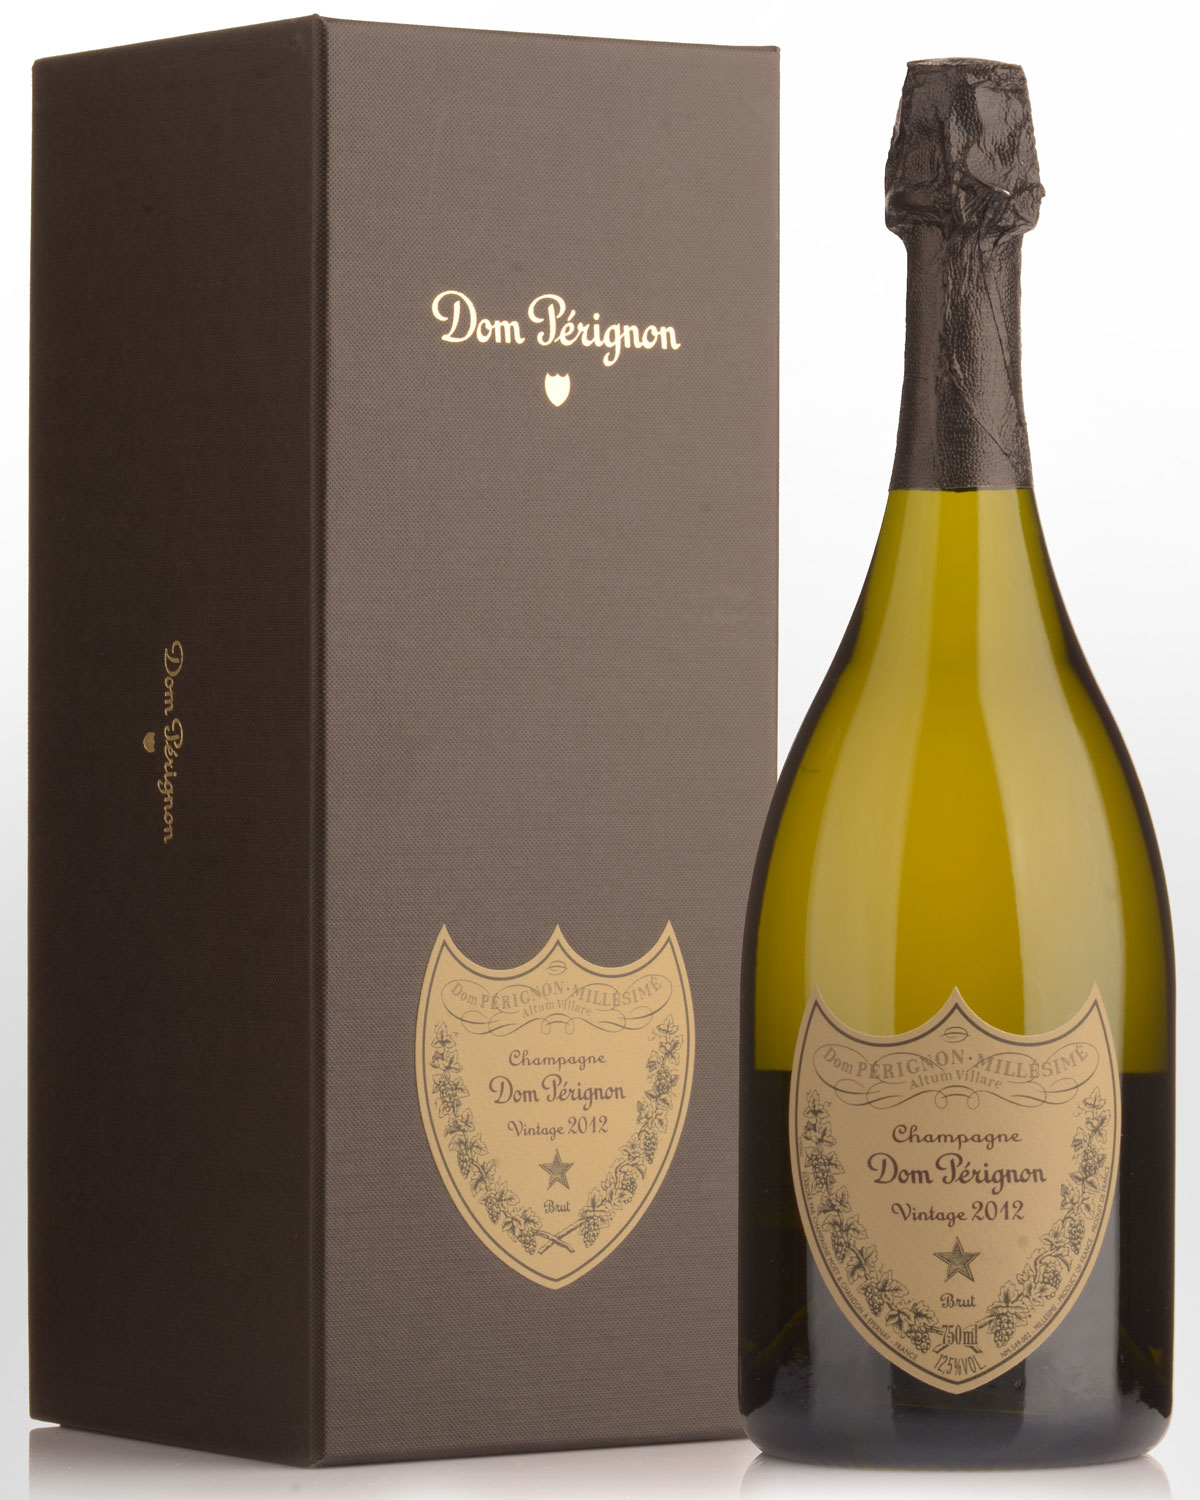 Nicks　Wine　Merchants　Perignon　Dom　2012　Champagne